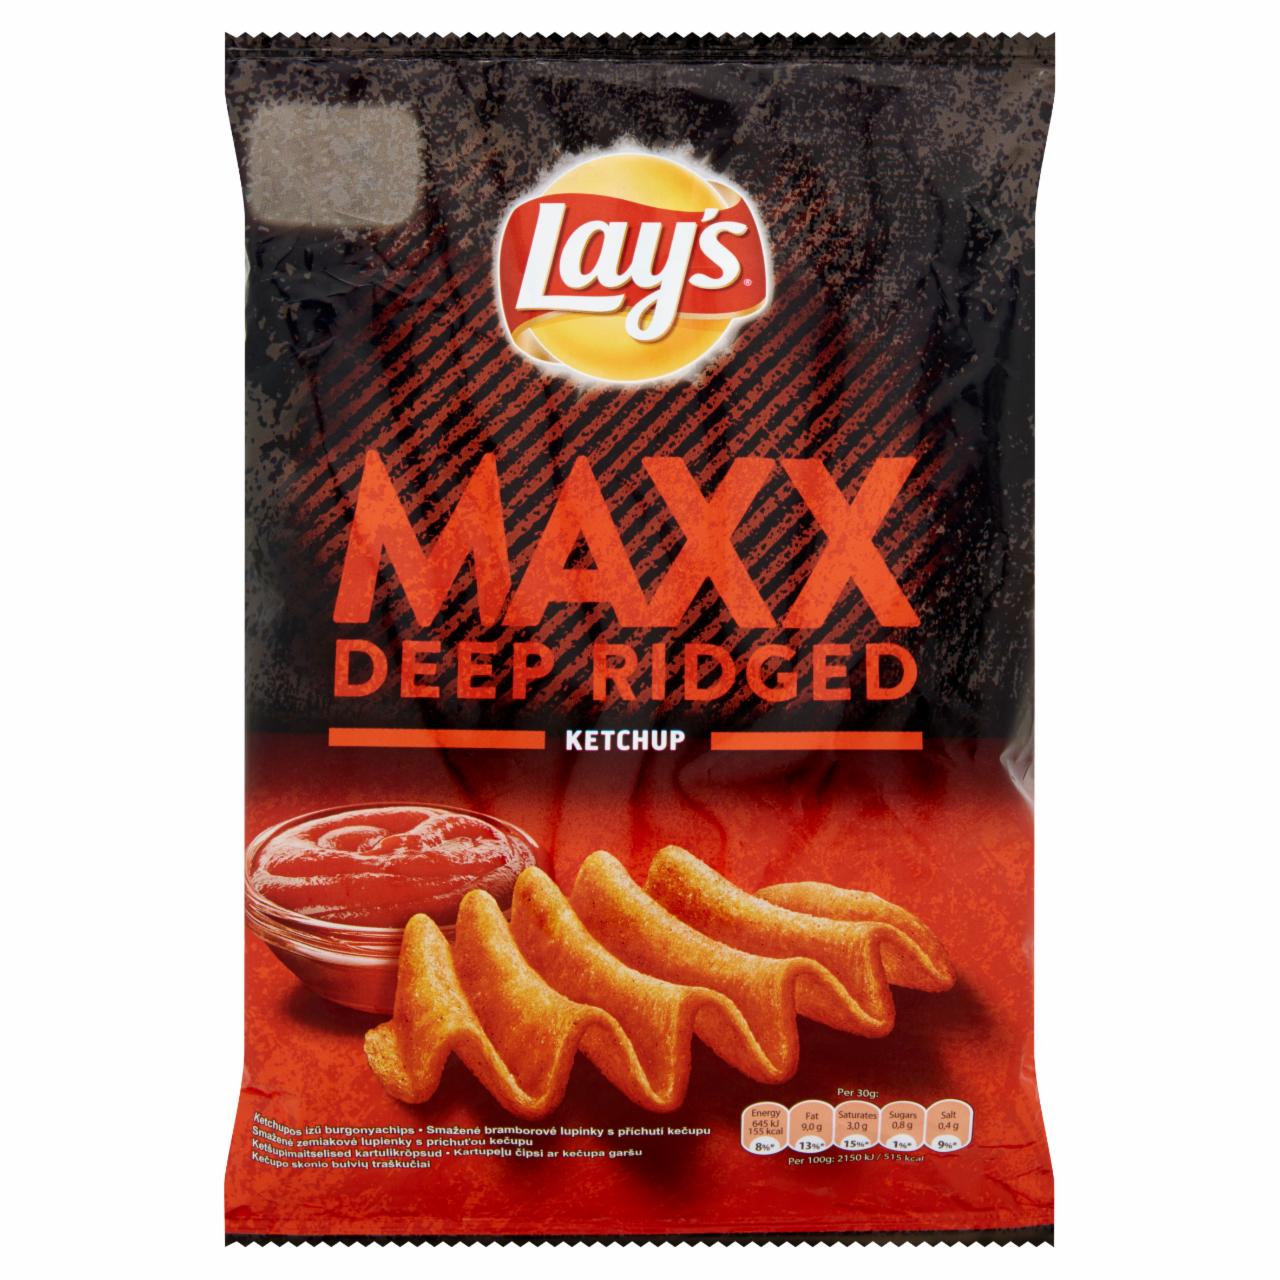 Képek - Lay's Maxx ketchupos ízű burgonyachips 70 g